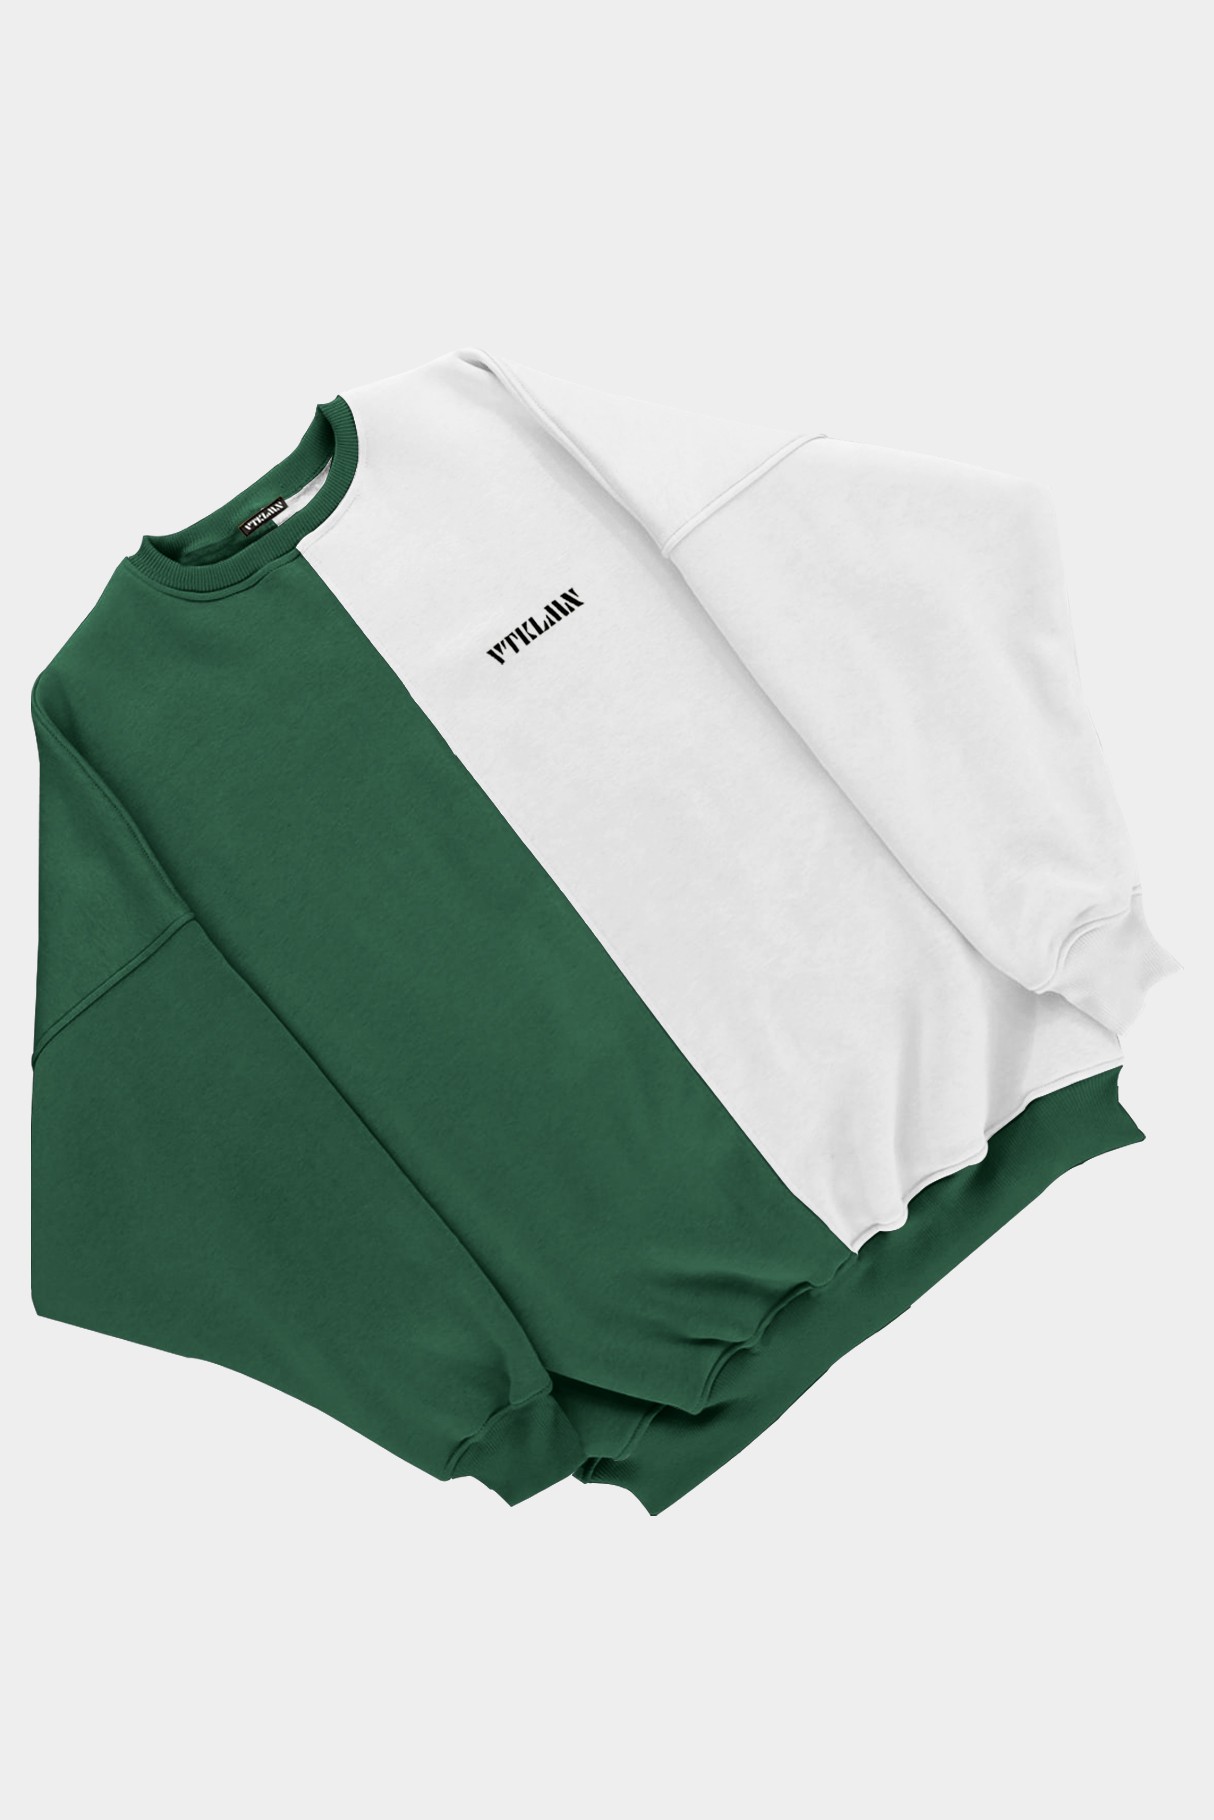  Kadın Erkek Renkli Sweatshirt - Koyu Yeşil Beyaz